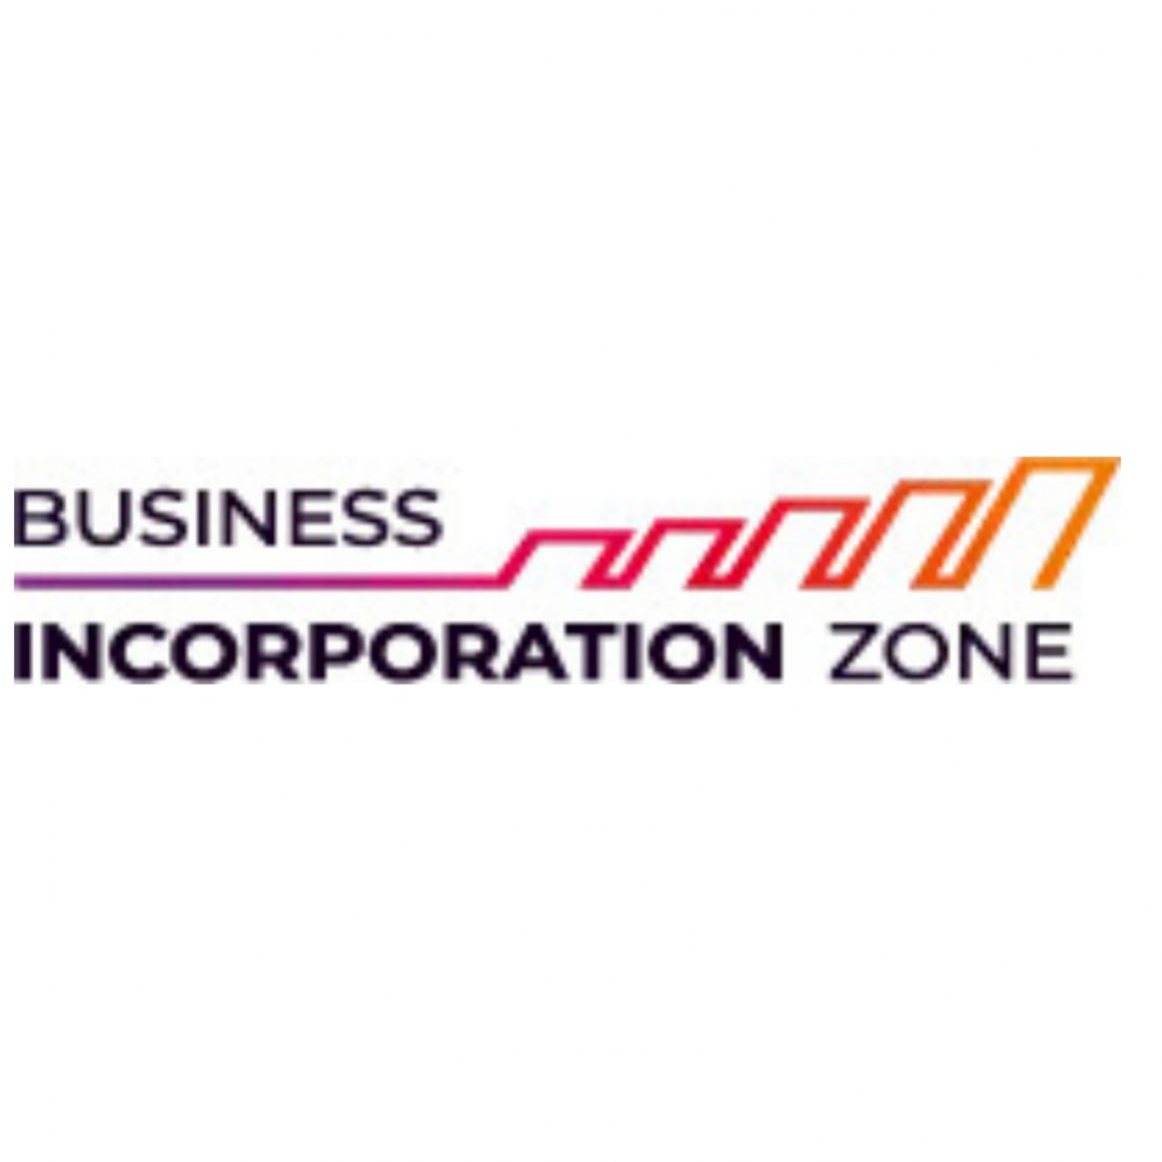 businessincorporationzoneuae